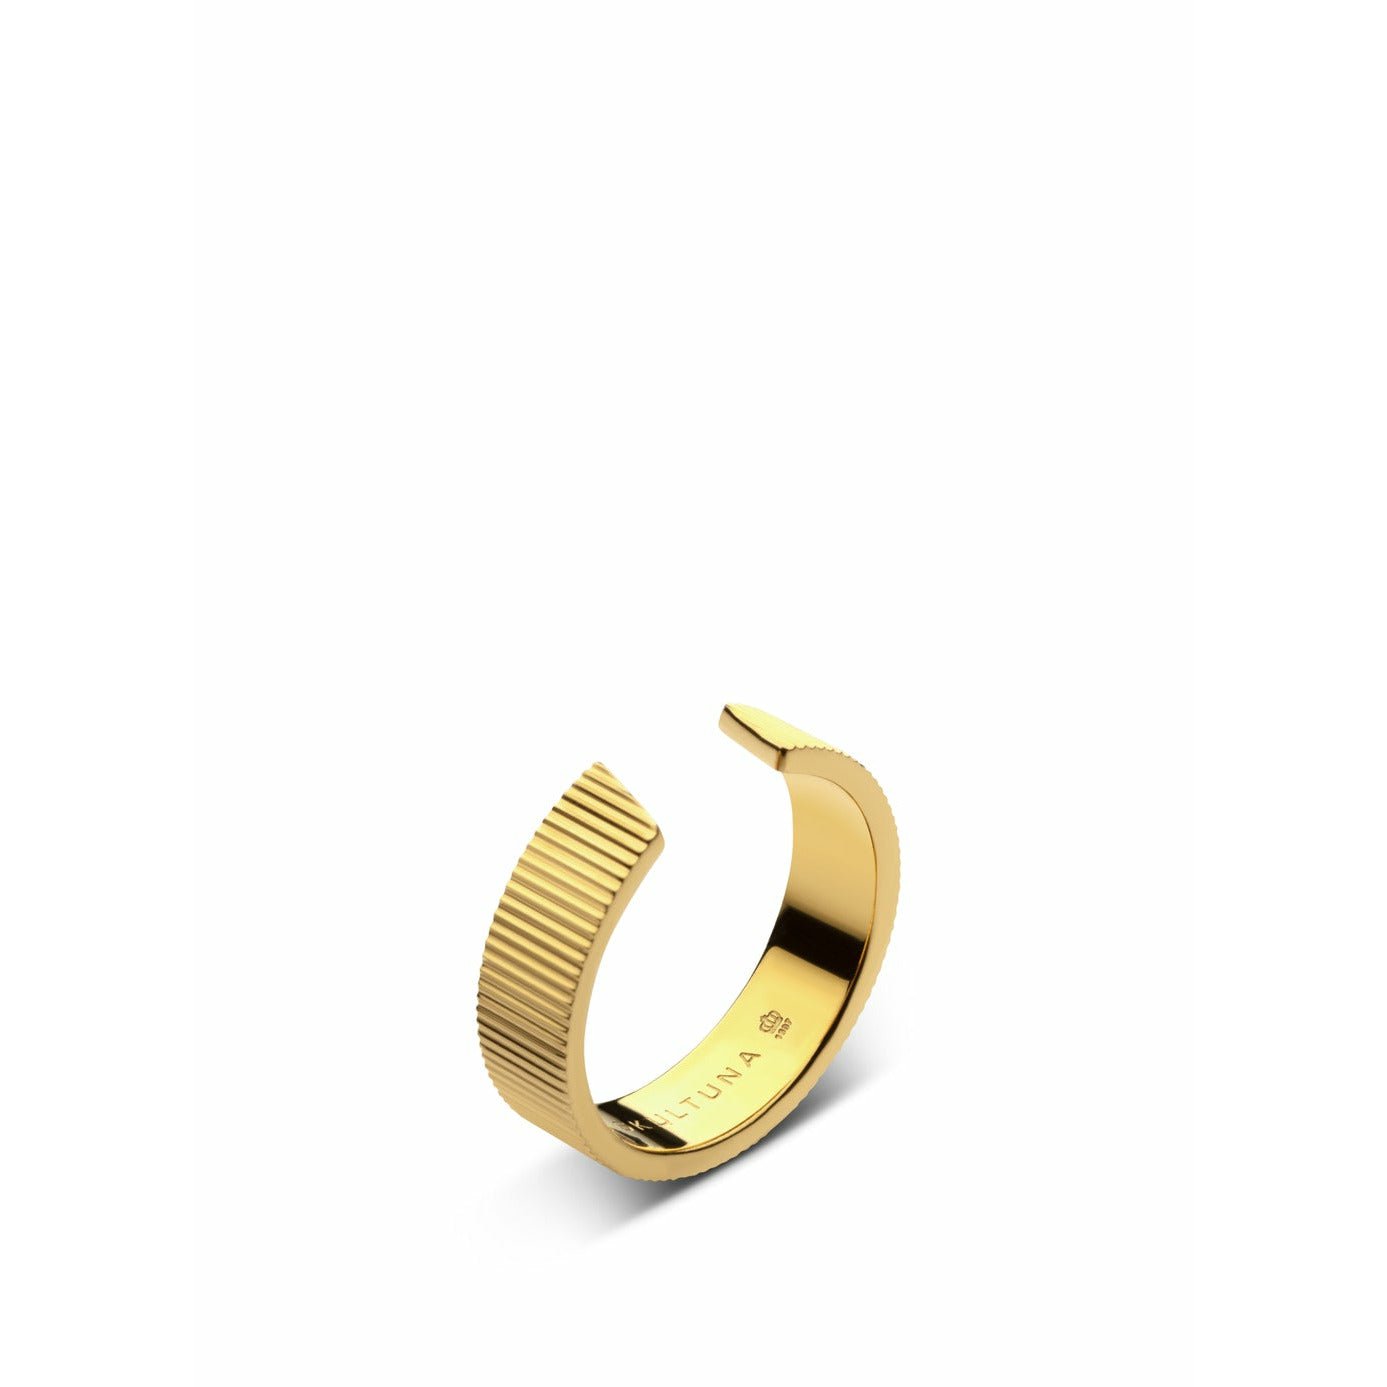 Skultuna gerippter Ring breit mittel 316 l Stahl Gold plattiert, Ø1,73 cm